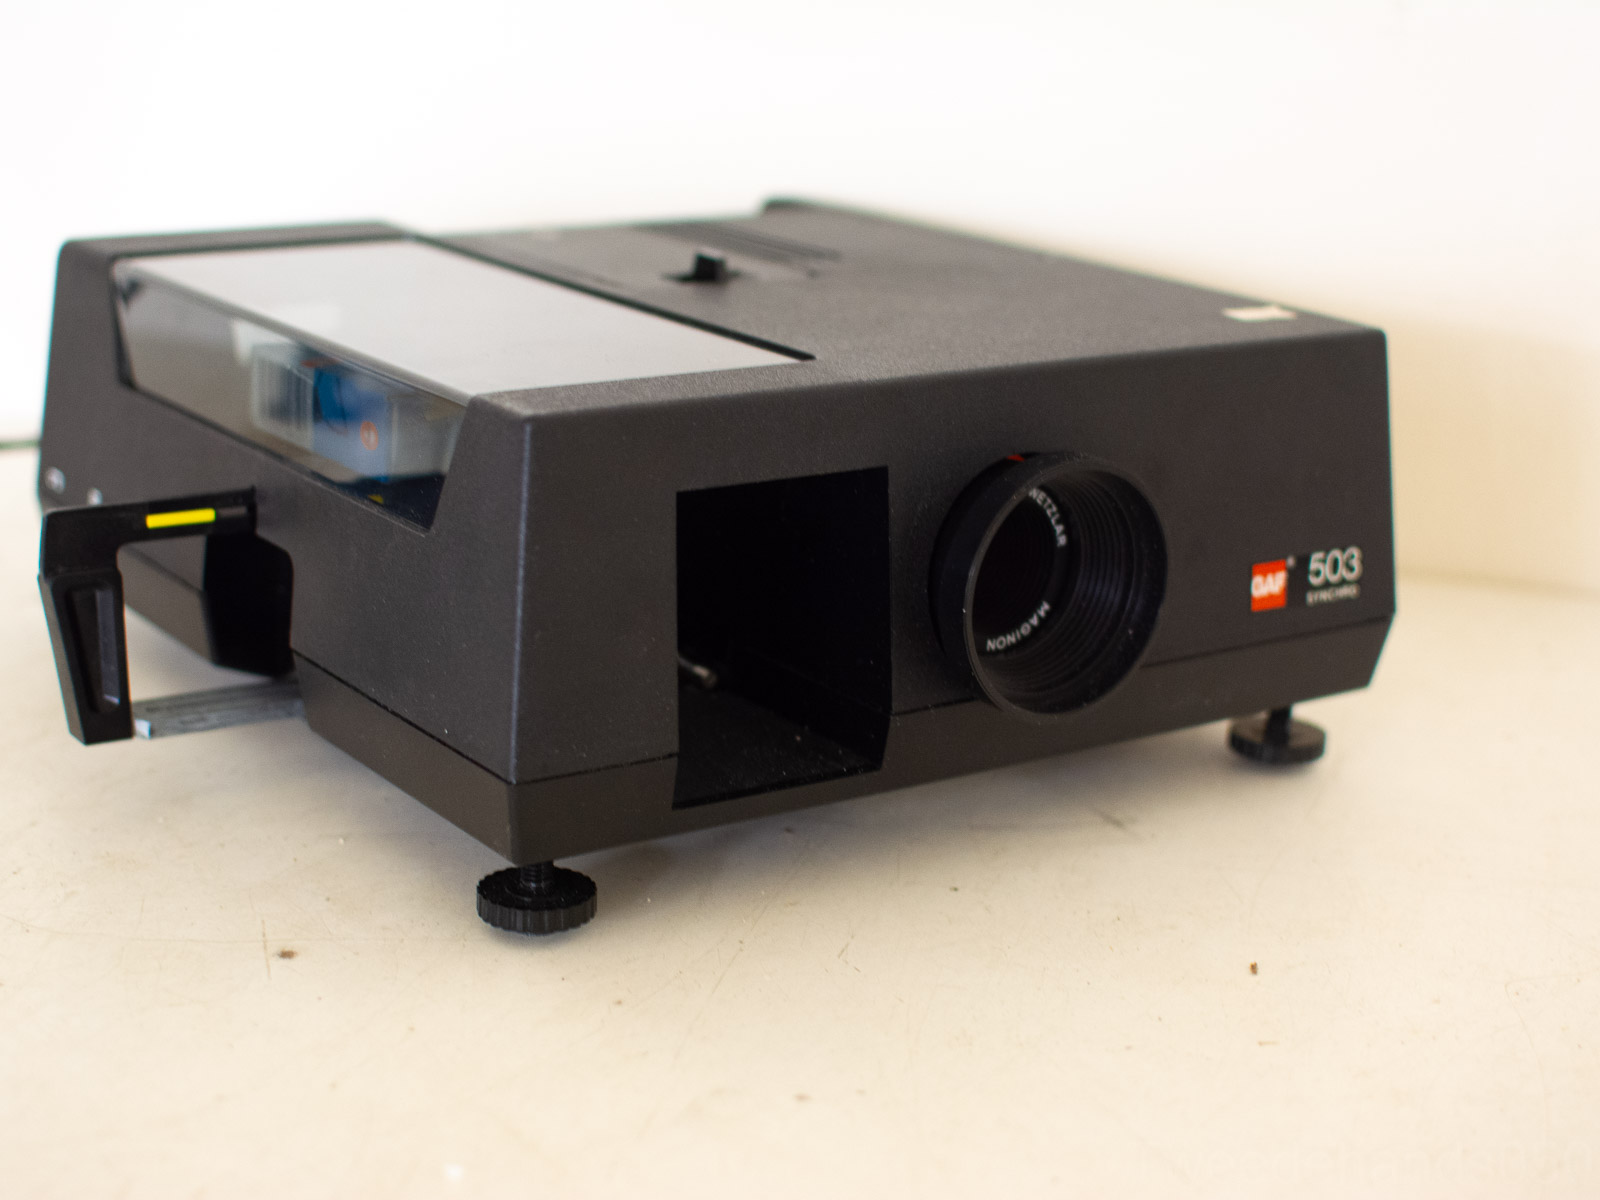 Gaf 503 synchro slide projector 31215